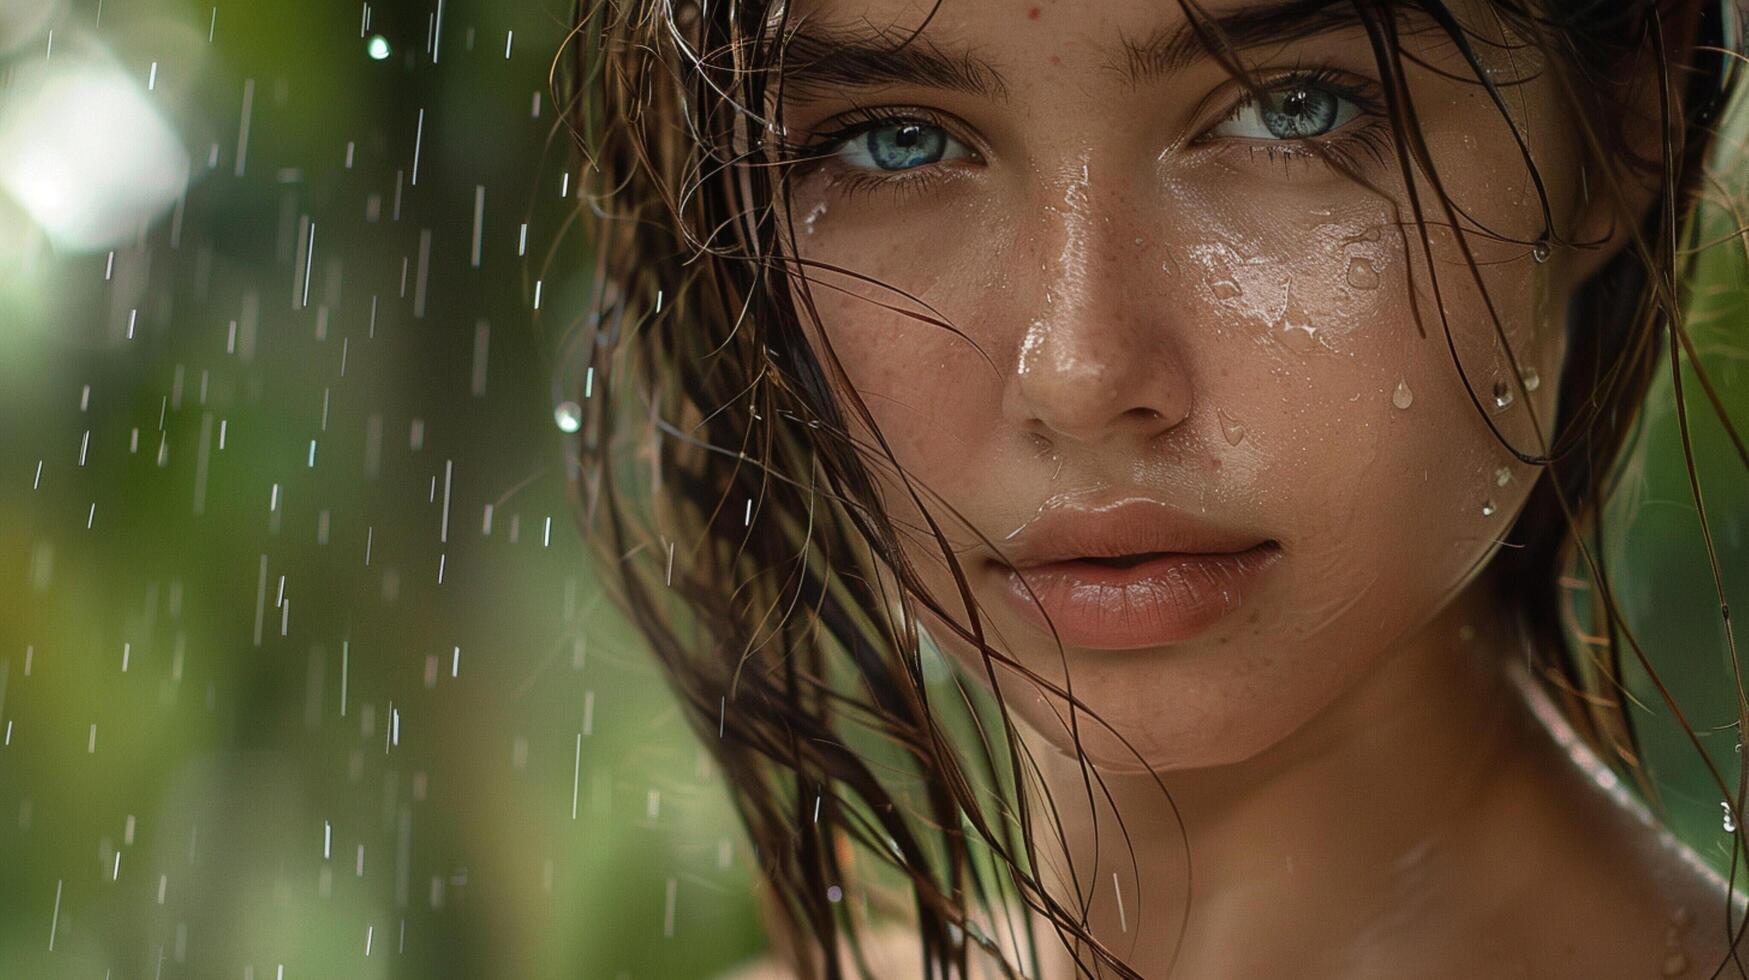 hermosa joven mujer con mojado pelo mirando foto